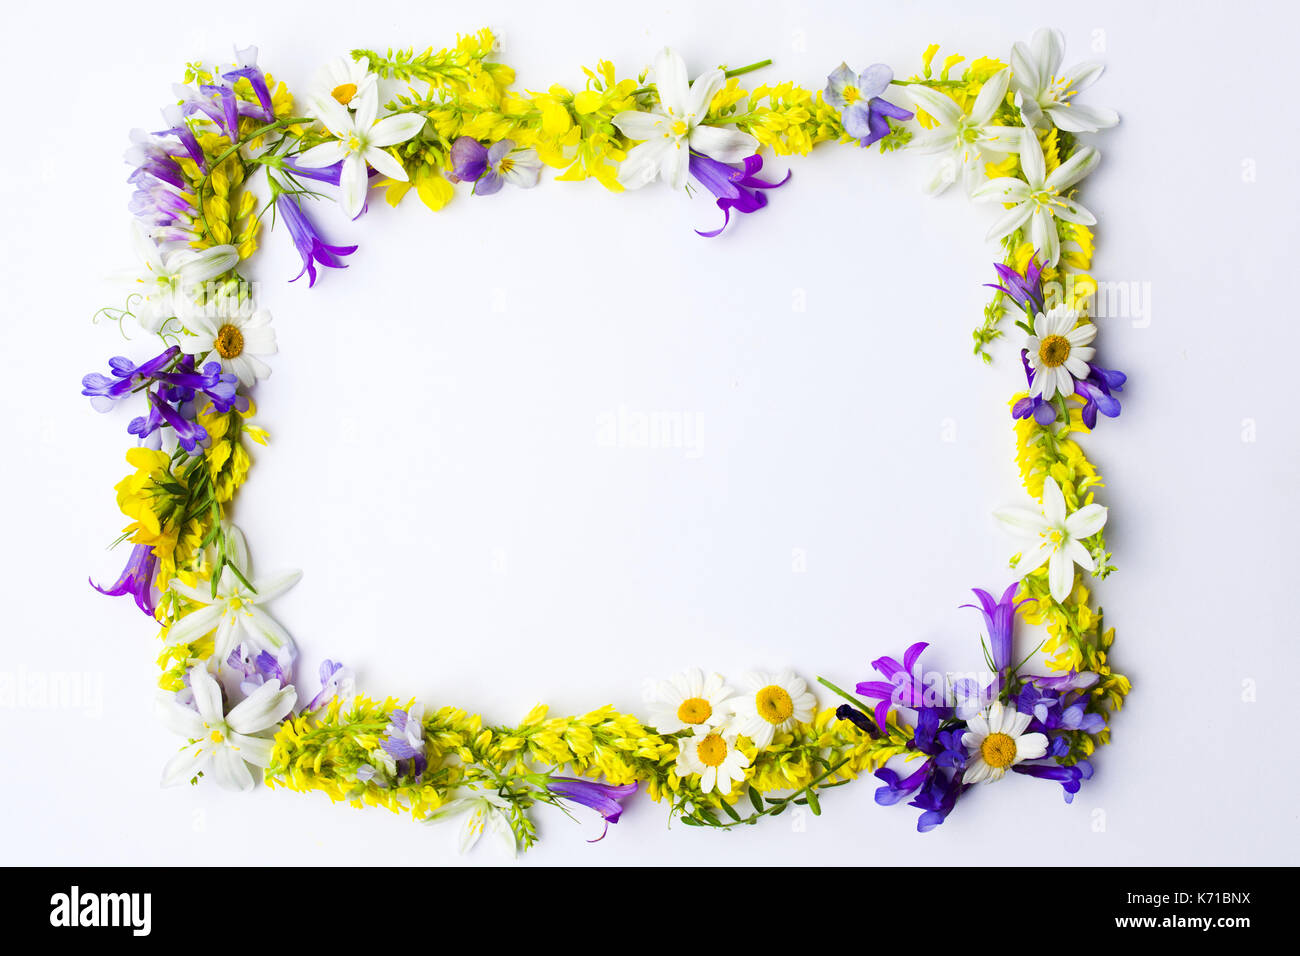 Wildblumen Anordnung mit Copyspace auf Weiß Stockfoto